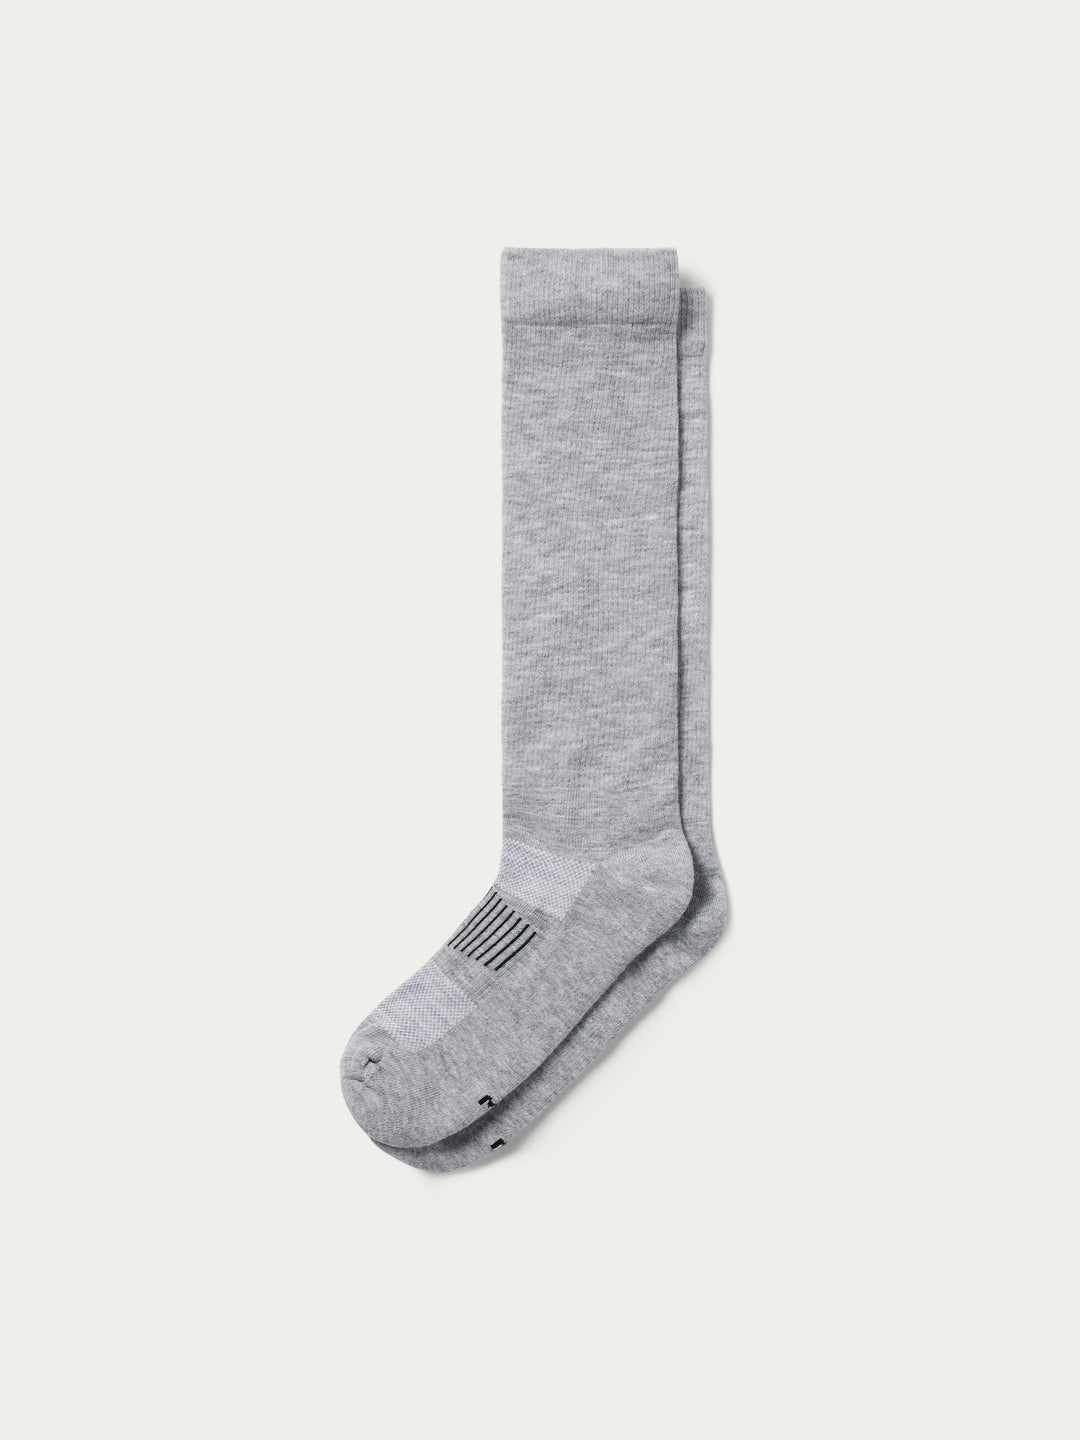 MesaWick Boot Socks - Schaefer Outfitter